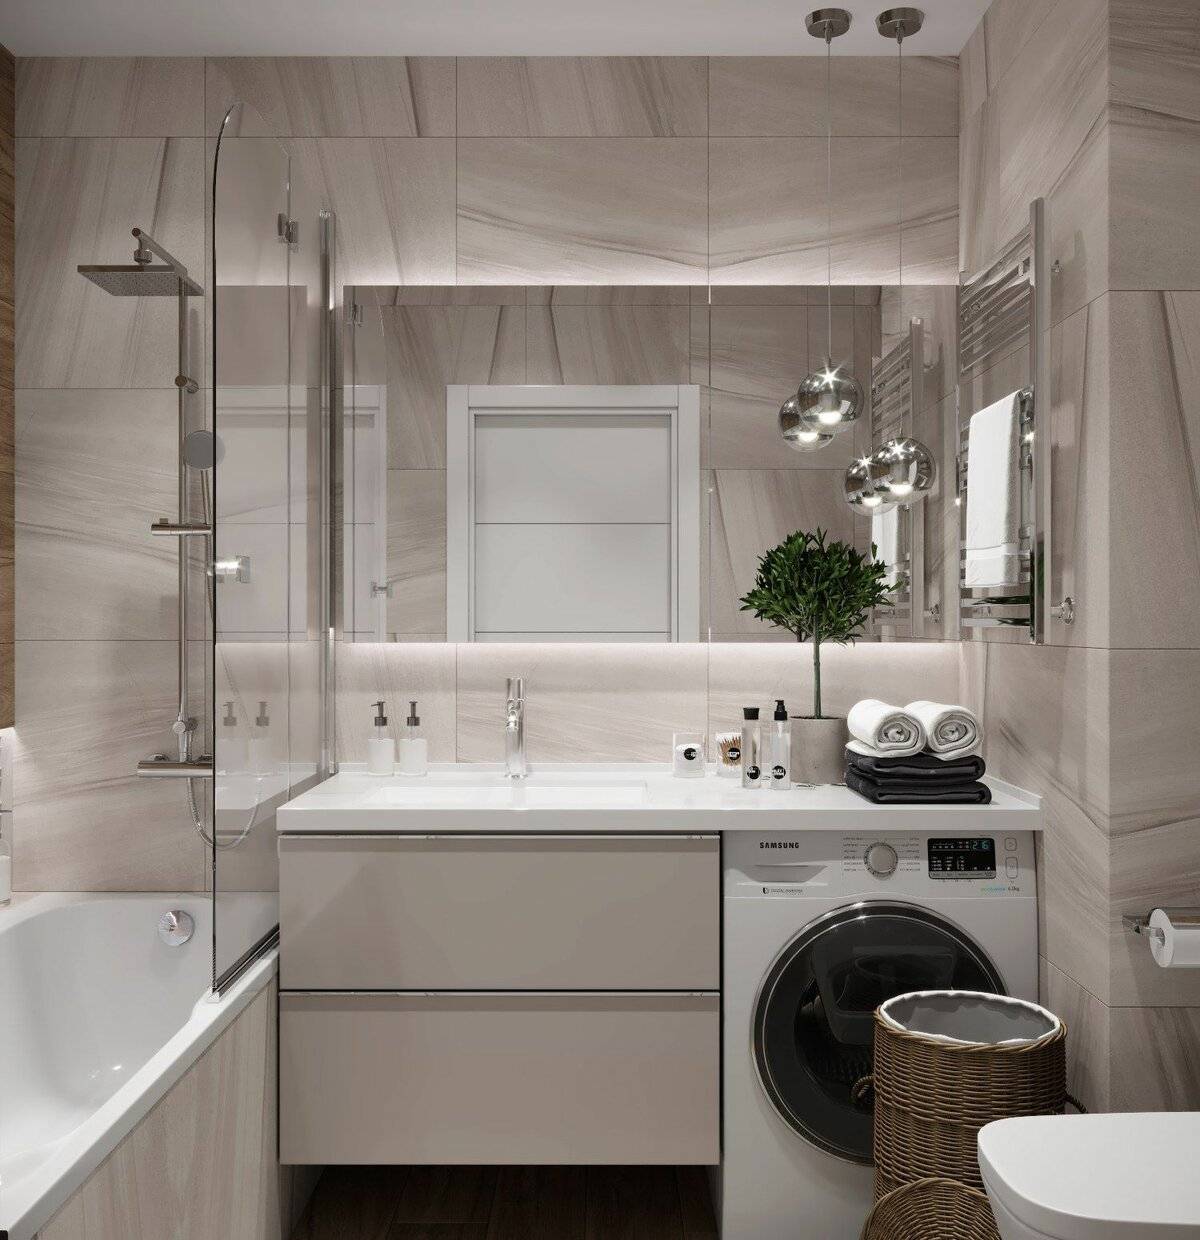 Дизайн ванной комнаты в квартире: от 4 до 8 кв. м | 22 фото